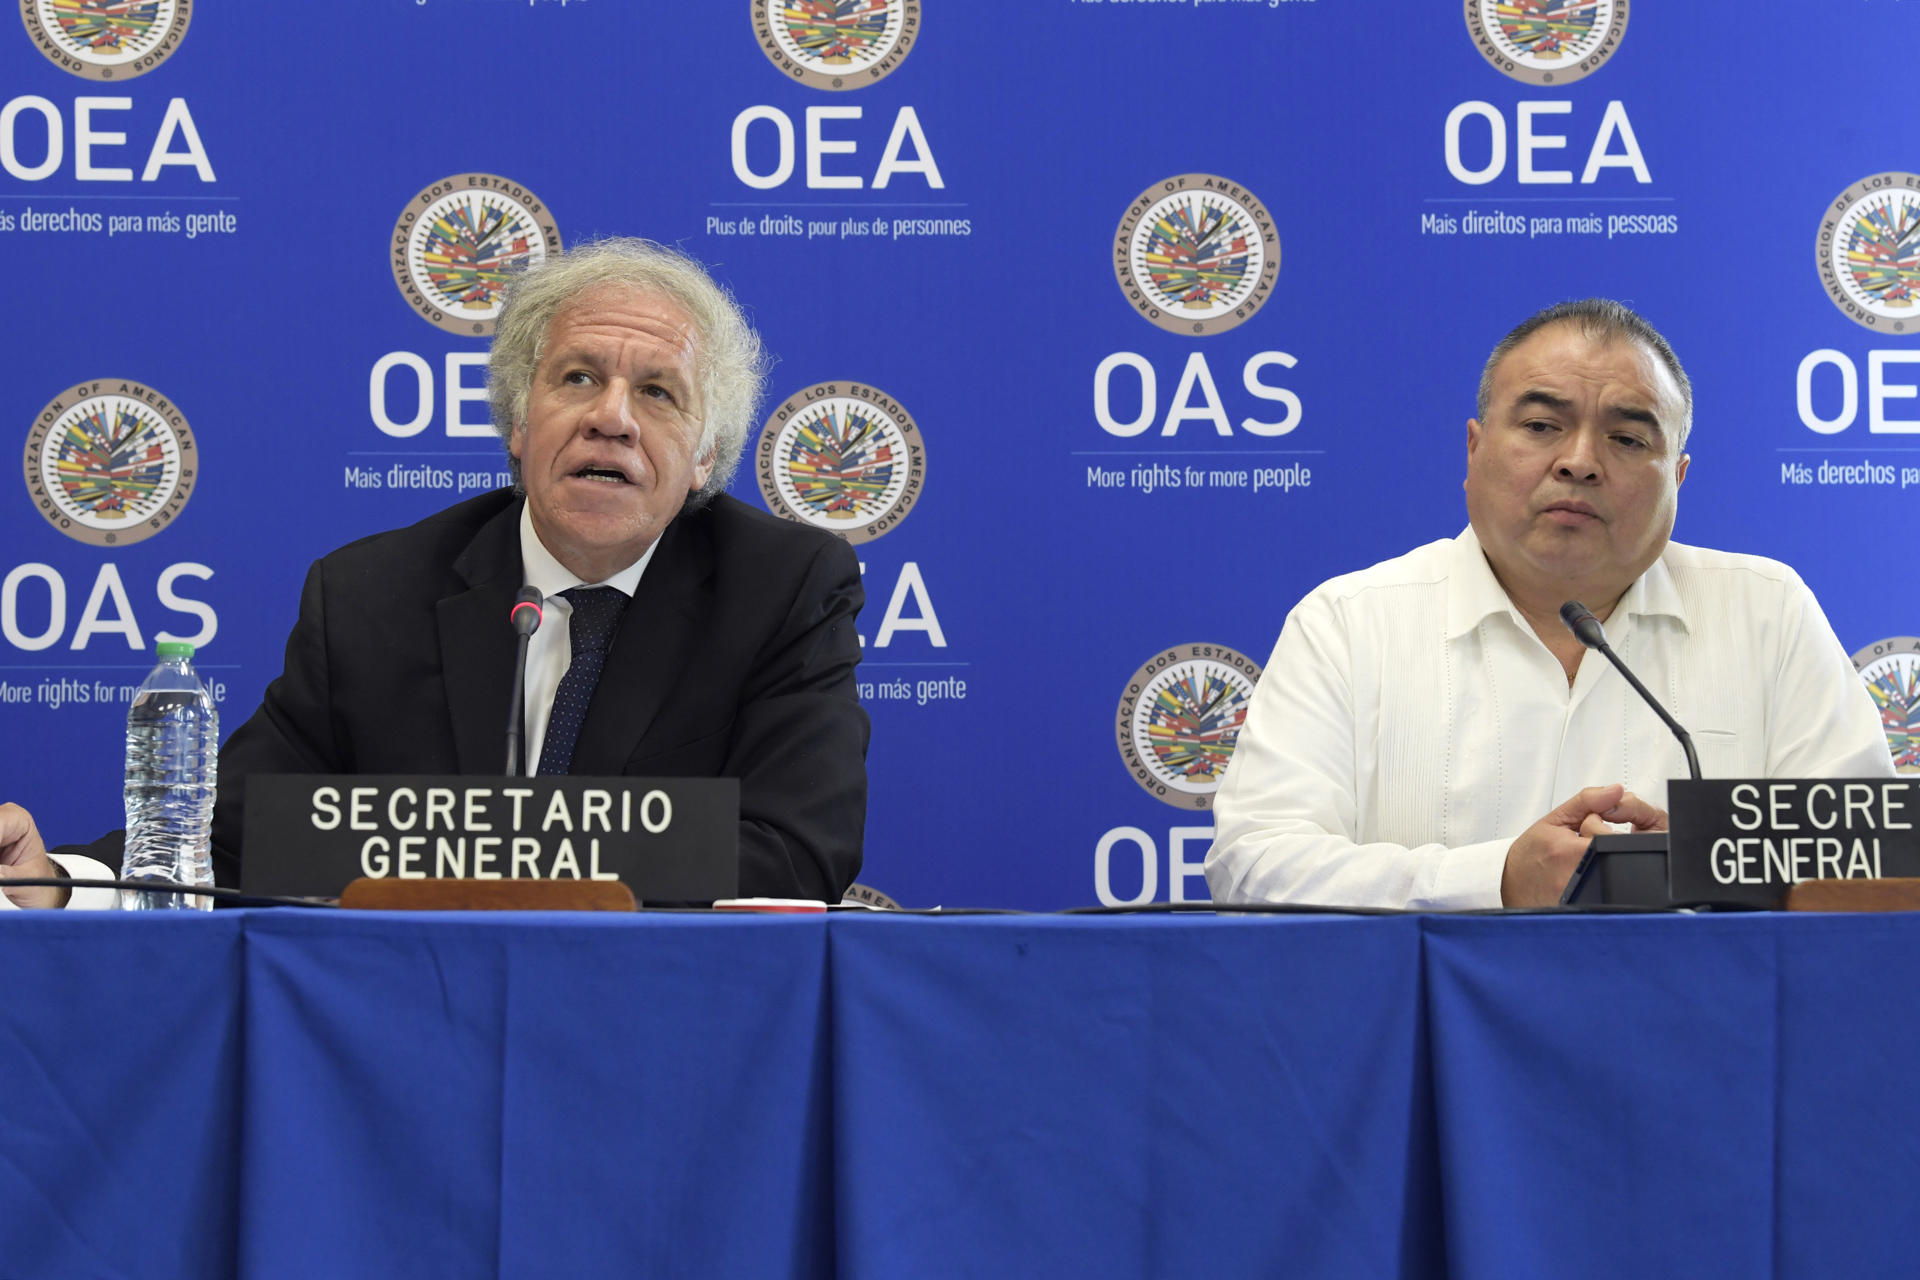 El secretario general y el secretario general adjunto de la Organización de los Estados Americanos (OEA), Luis Almagro (i) y Nestor Mendez (d), hablan durante una rueda de prensa previa a la 53 Asamblea General, hoy en Washington (EE.UU.). EFE/Lenin Nolly